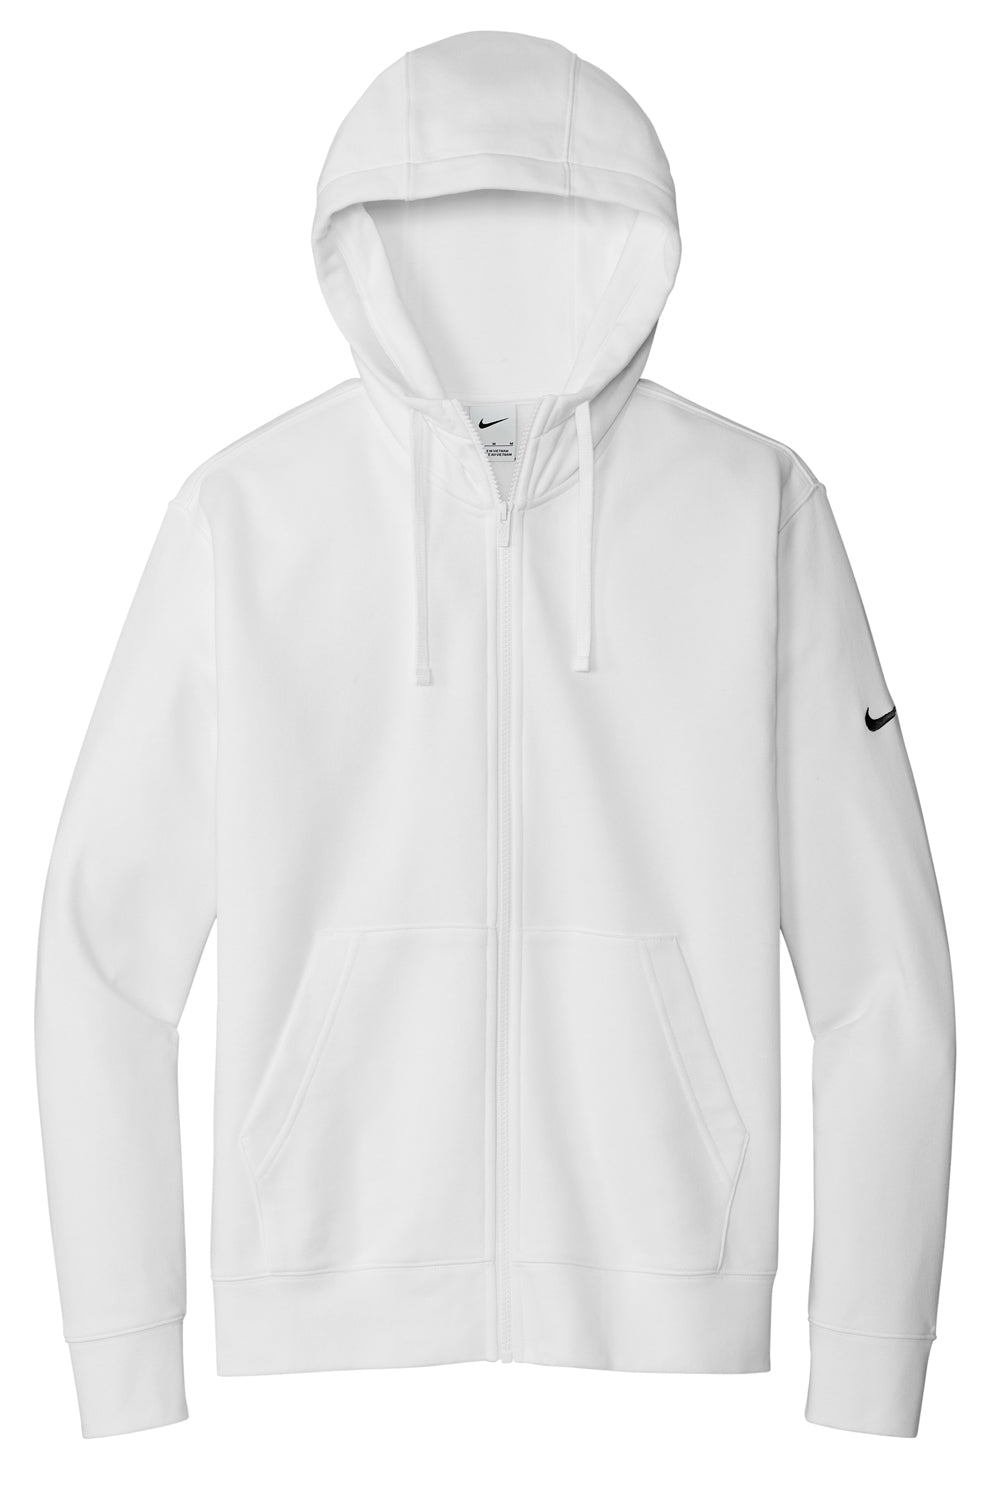 Nike NKDR1513 Mens Club Fleece Full Zip Hooded Sweatshirt Hoodie White Flat Front